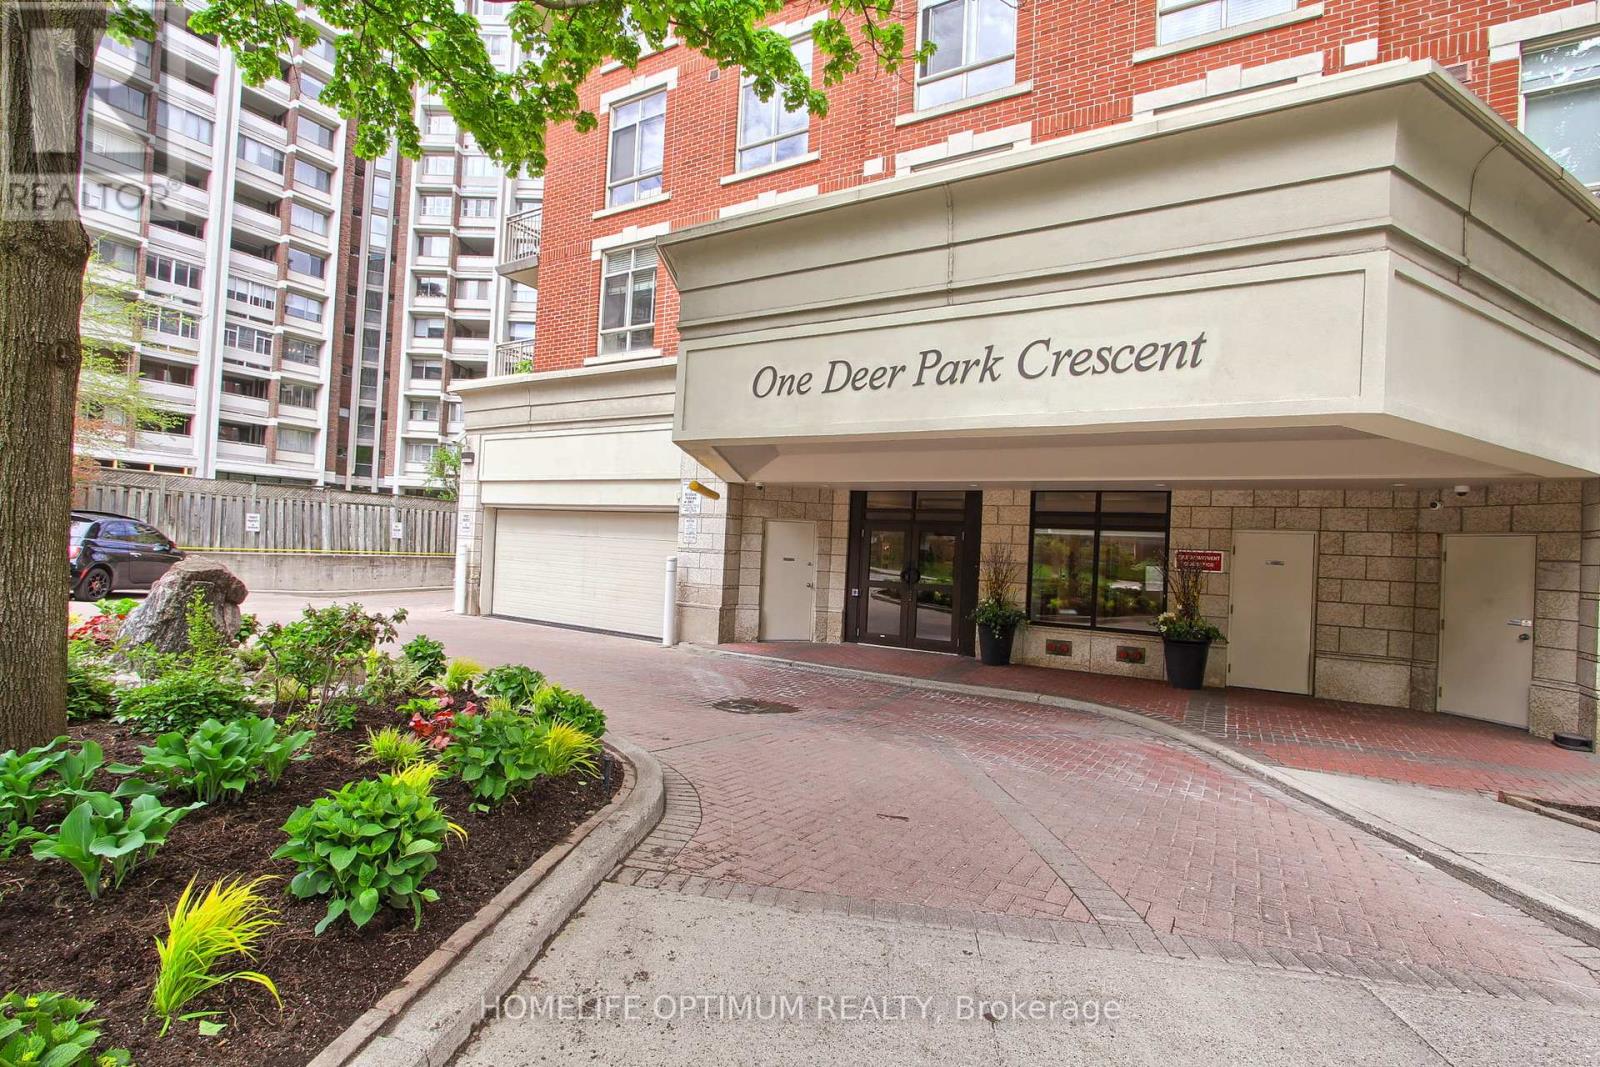 303 - 1 Deer Park Crescent E, Toronto, Ontario  M4V 3C4 - Photo 2 - C8332840